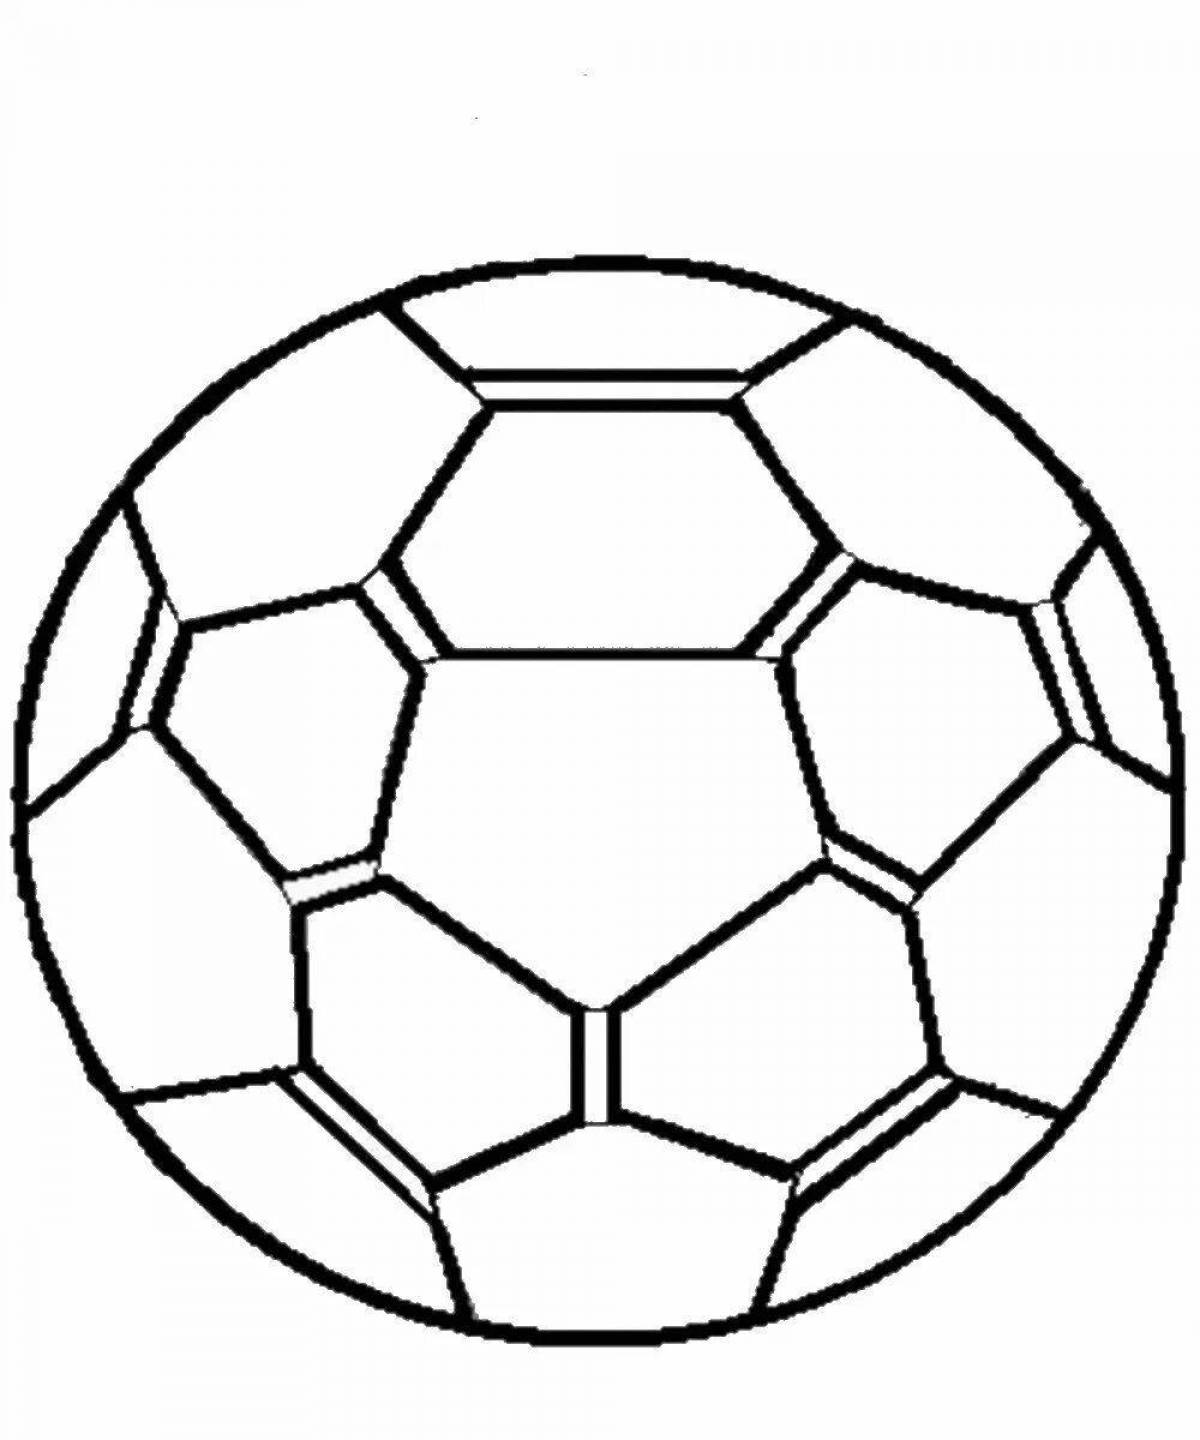 Цветная яркая страница раскраски футбольного мяча для детей